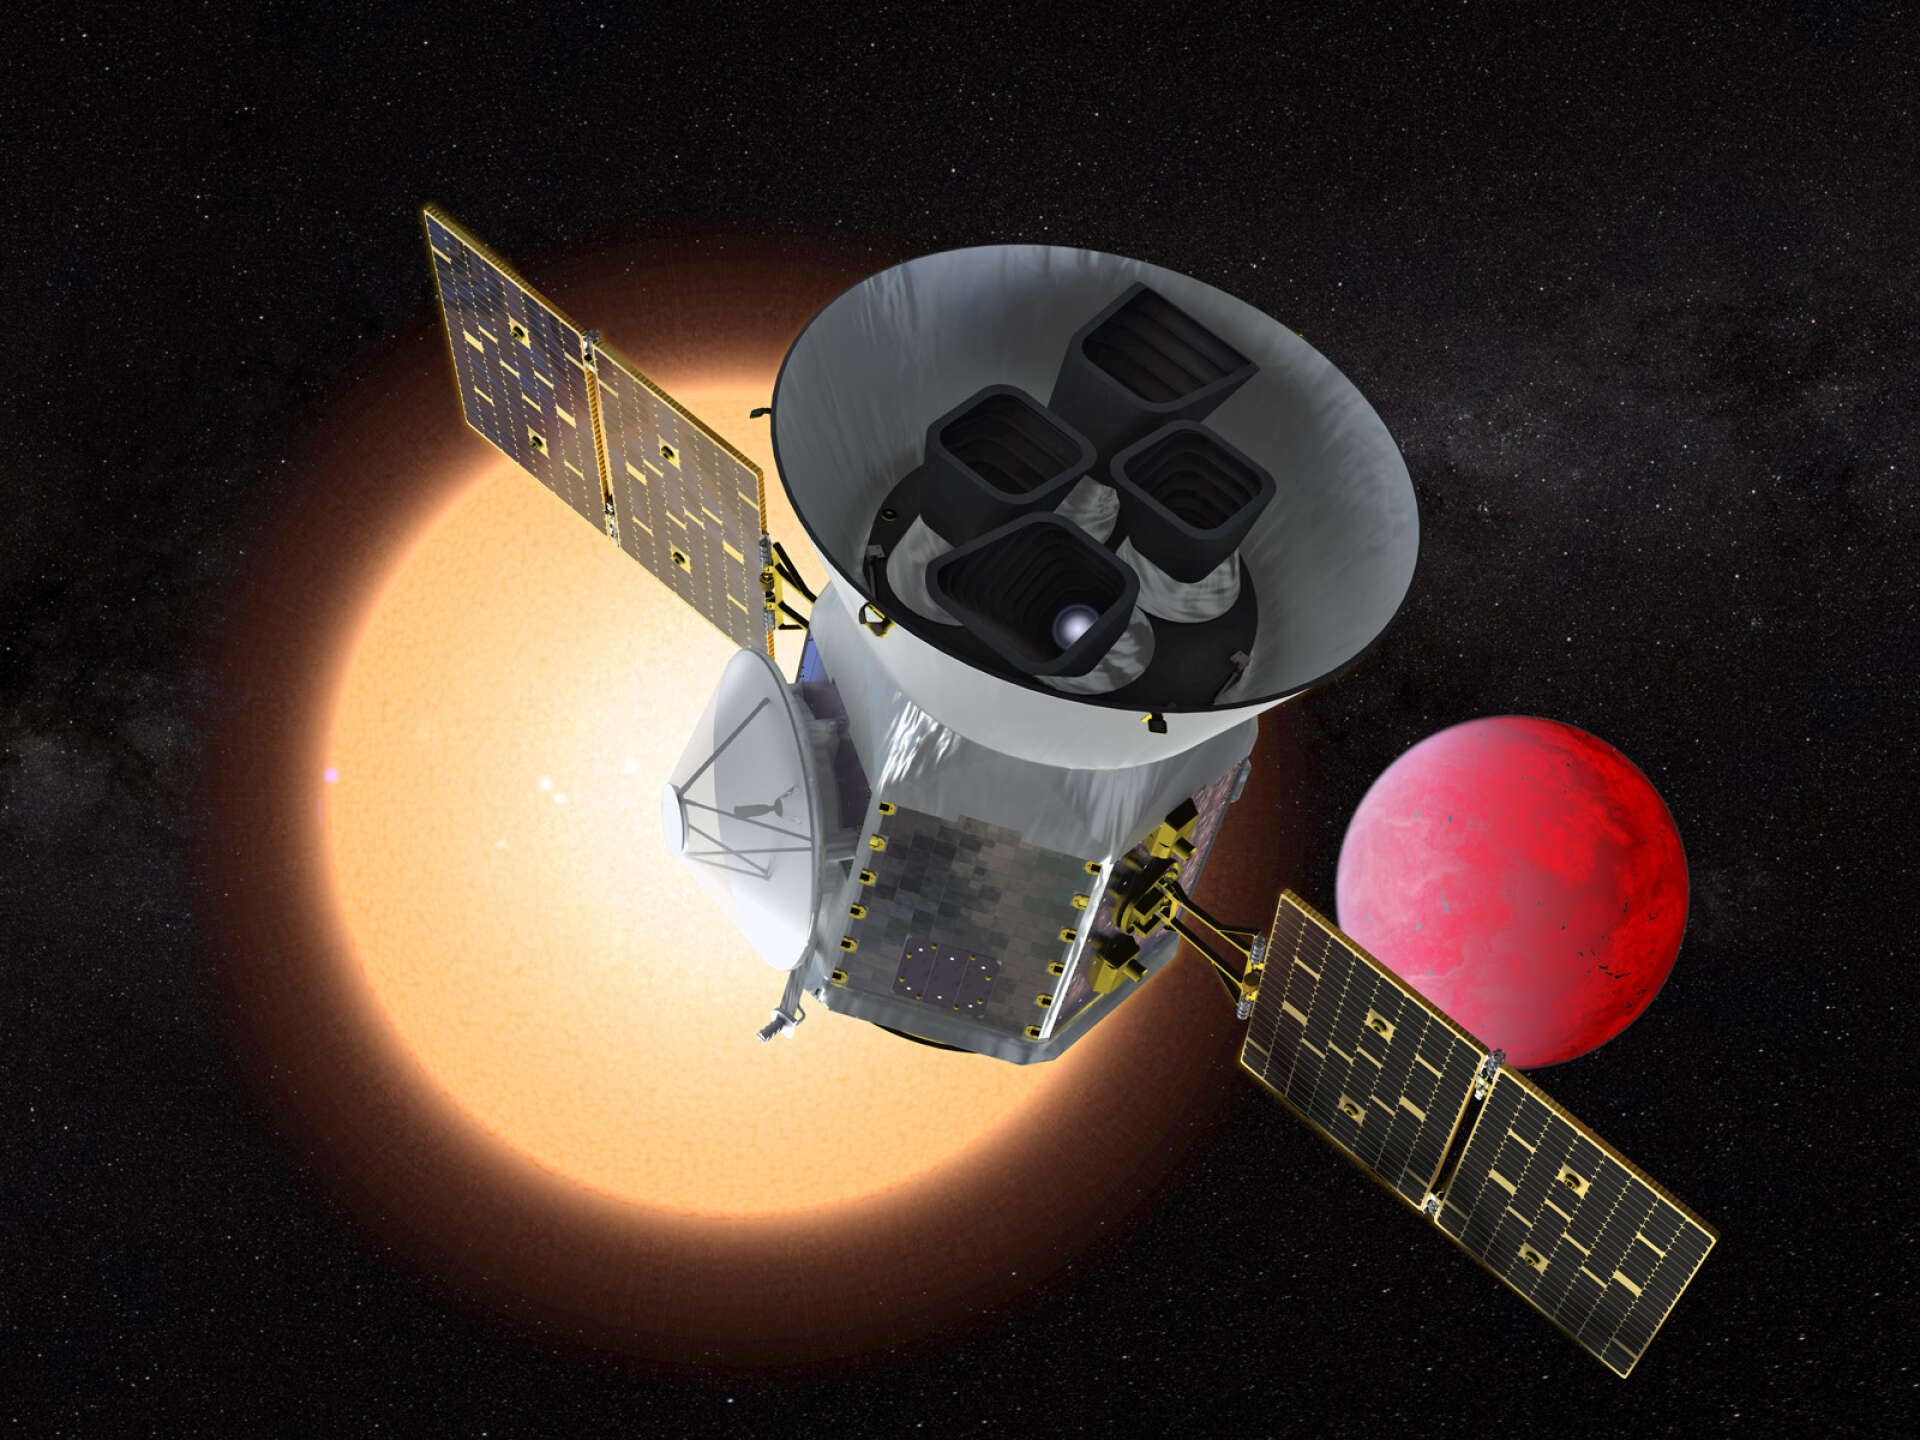 Illustration du Transiting Exoplanet Survey Satellite (TESS) devant une planète de lave en orbite autour de son étoile hôte. TESS identifiera des milliers de nouvelles planètes potentielles à étudier et à observer.